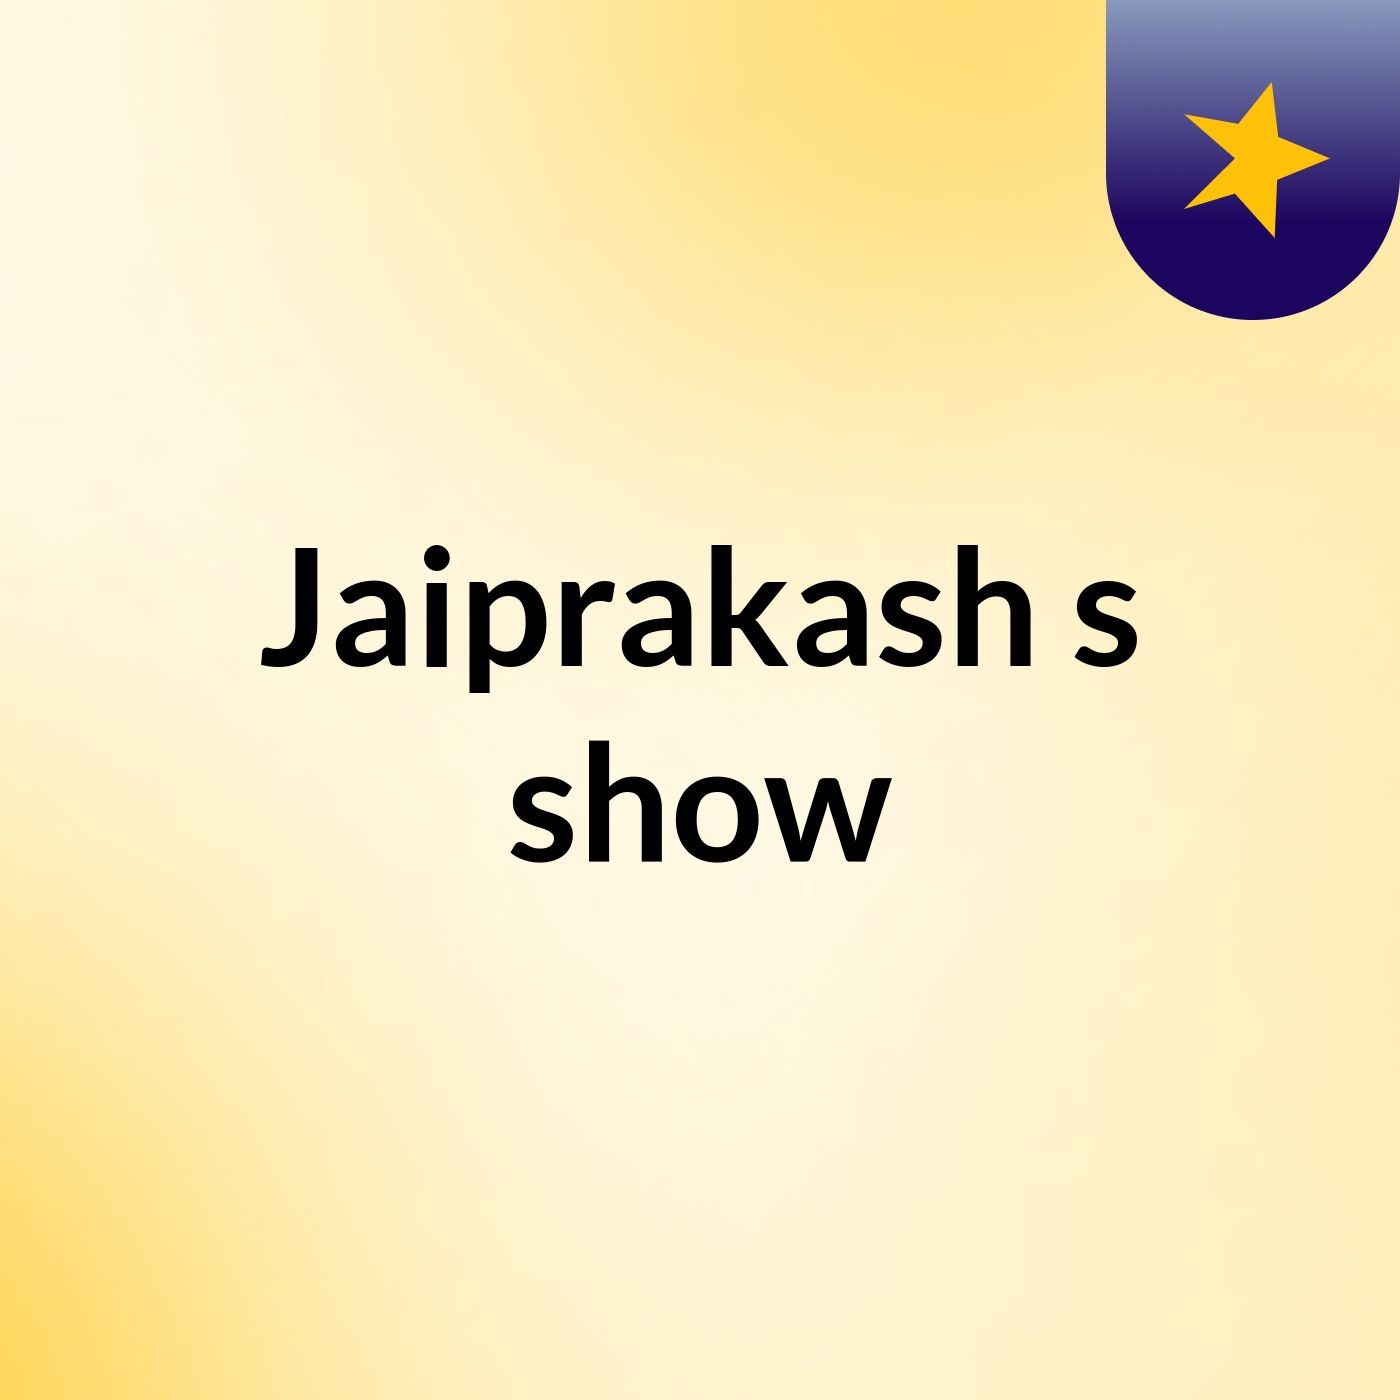 Episode 19 - Jaiprakash's show